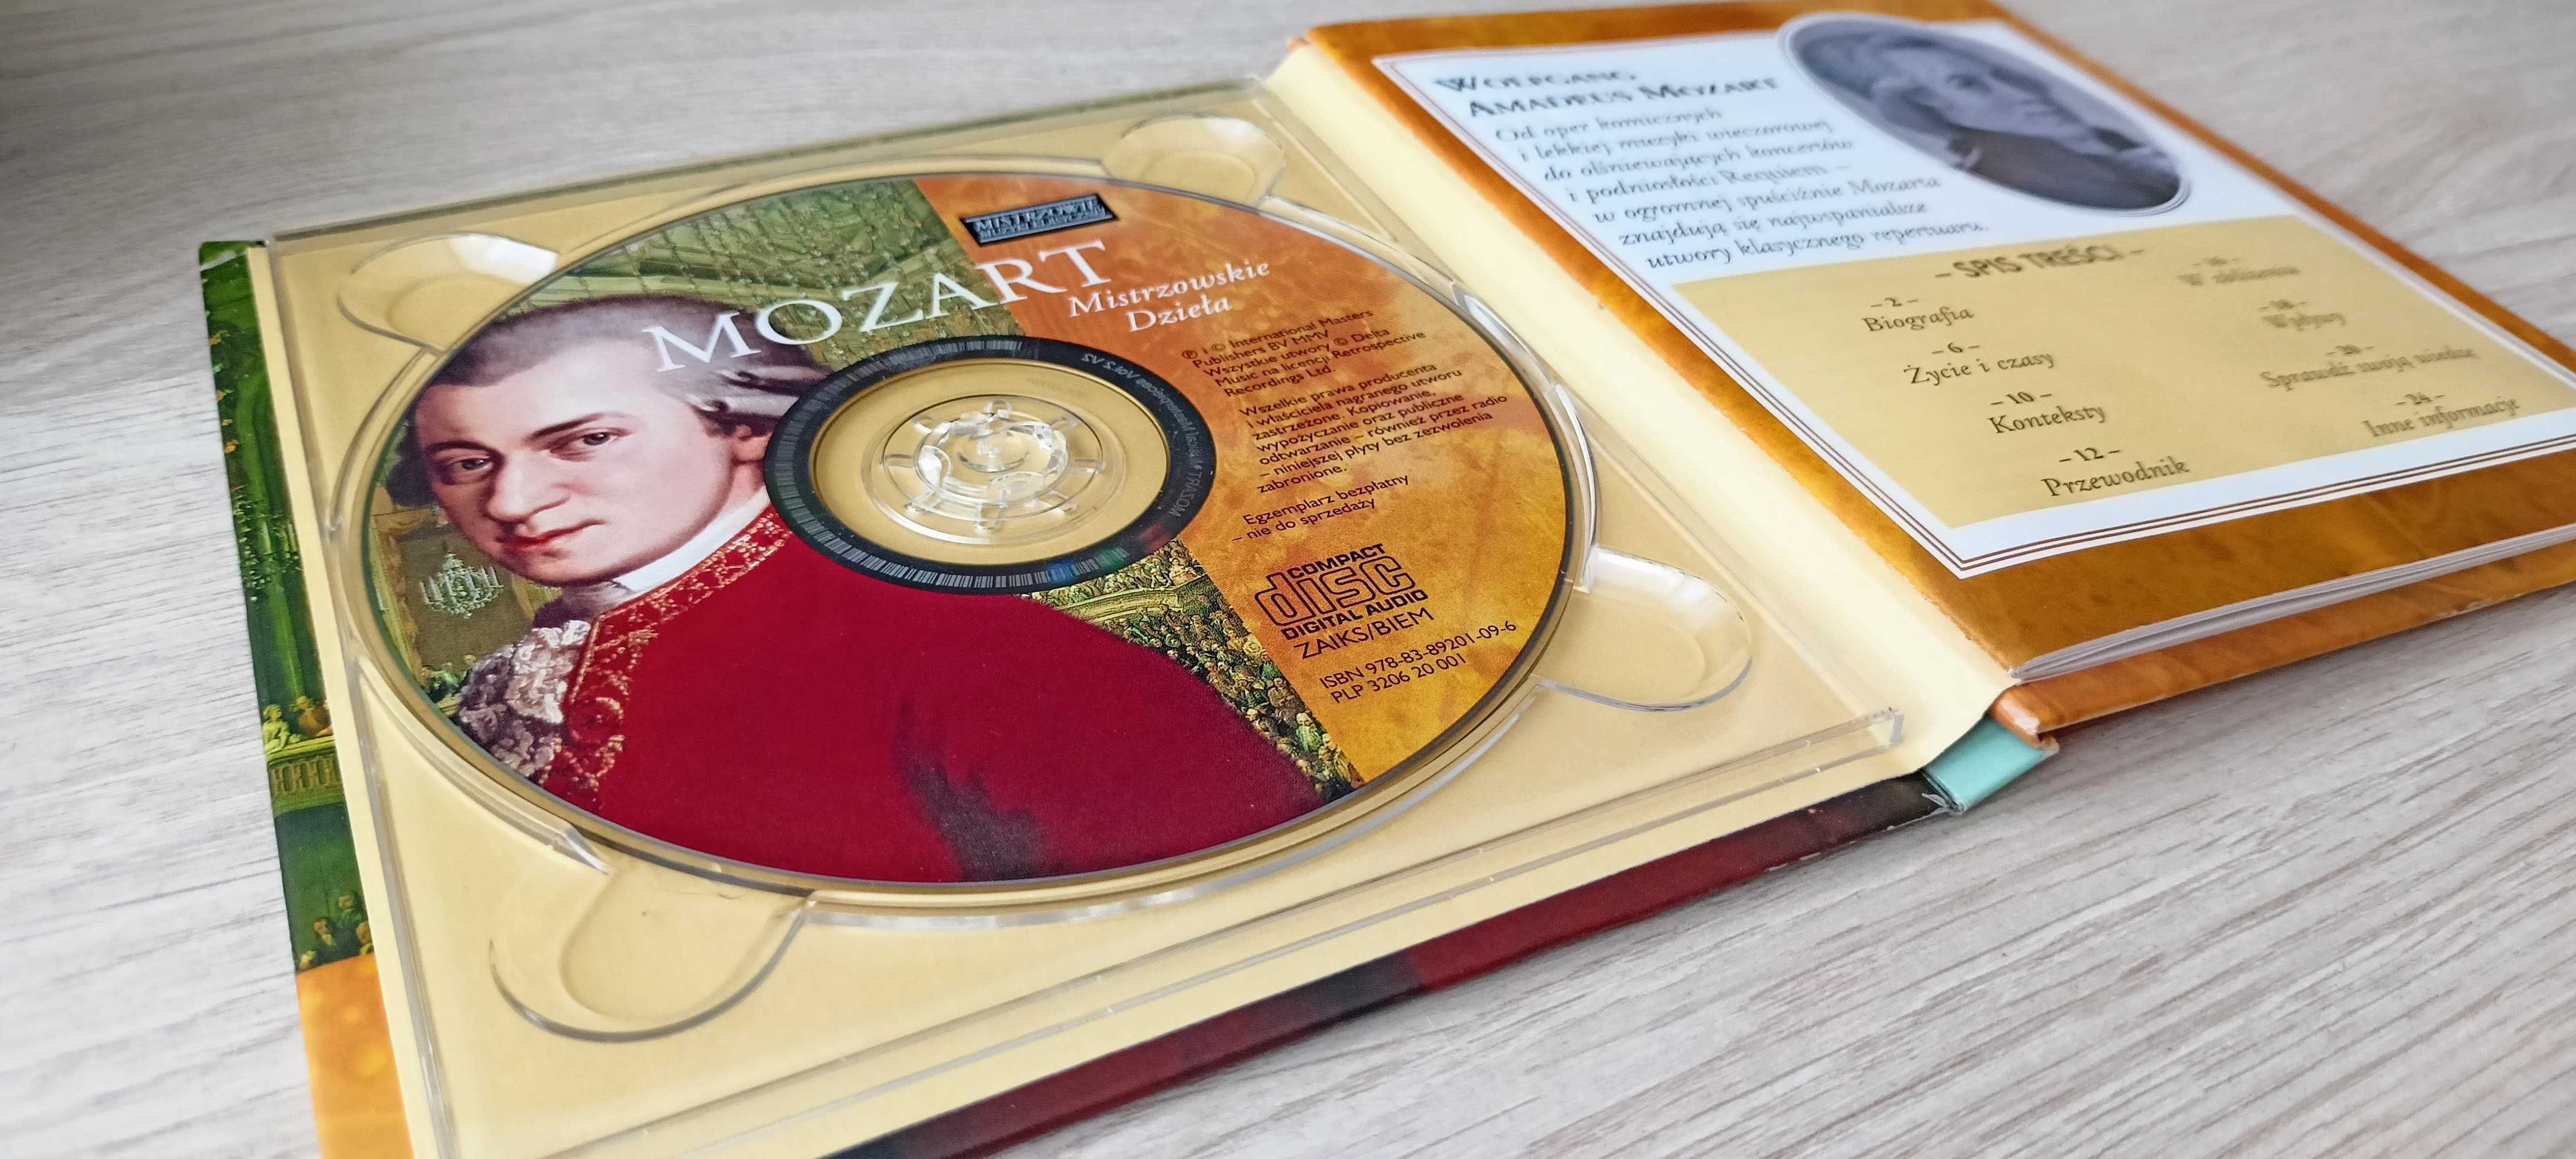 Płyta CD - Mozart. Mistrzowskie dzieła.